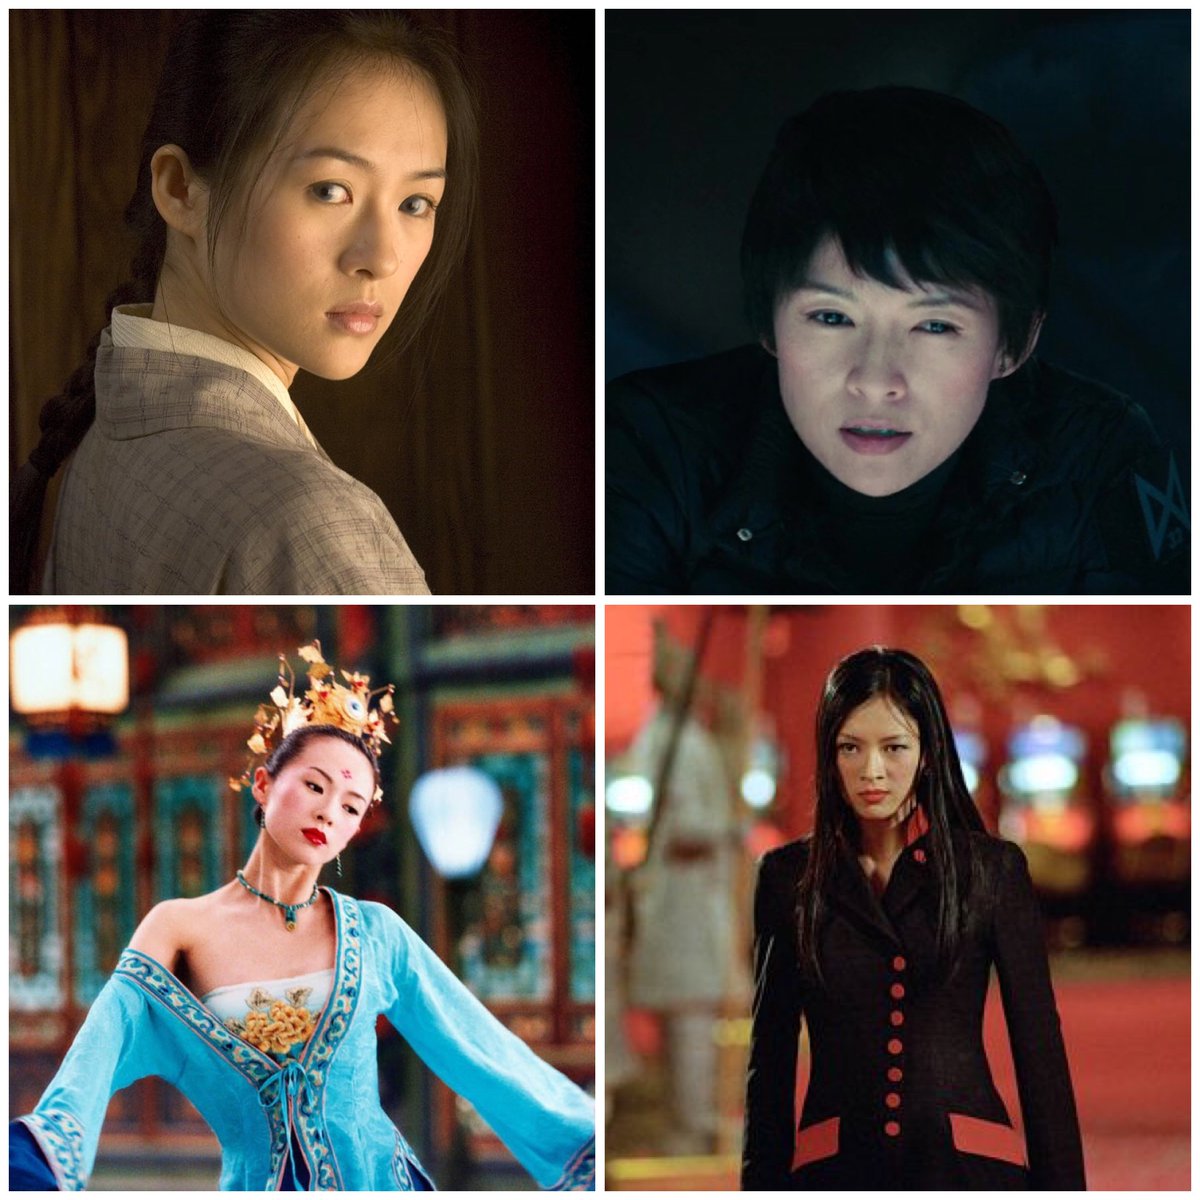 Happy birthday to Zhang Ziyi🎂 

The actress turns 45 today.

#ZhangZiyi